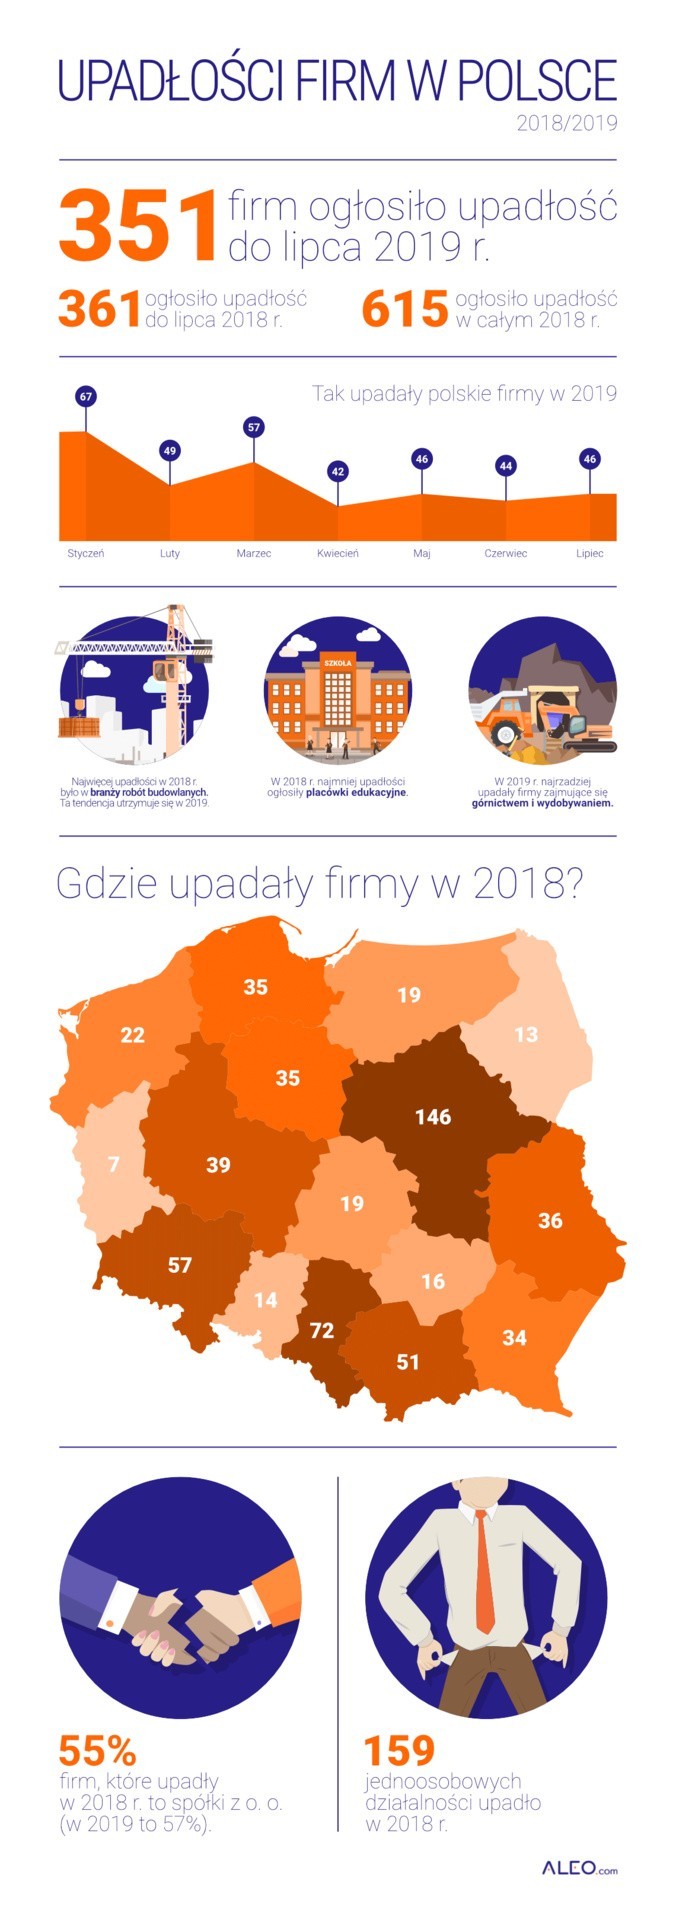 Wiadomo, ile przedsiębiorstw upadło w województwie podlaskim w 2018 roku